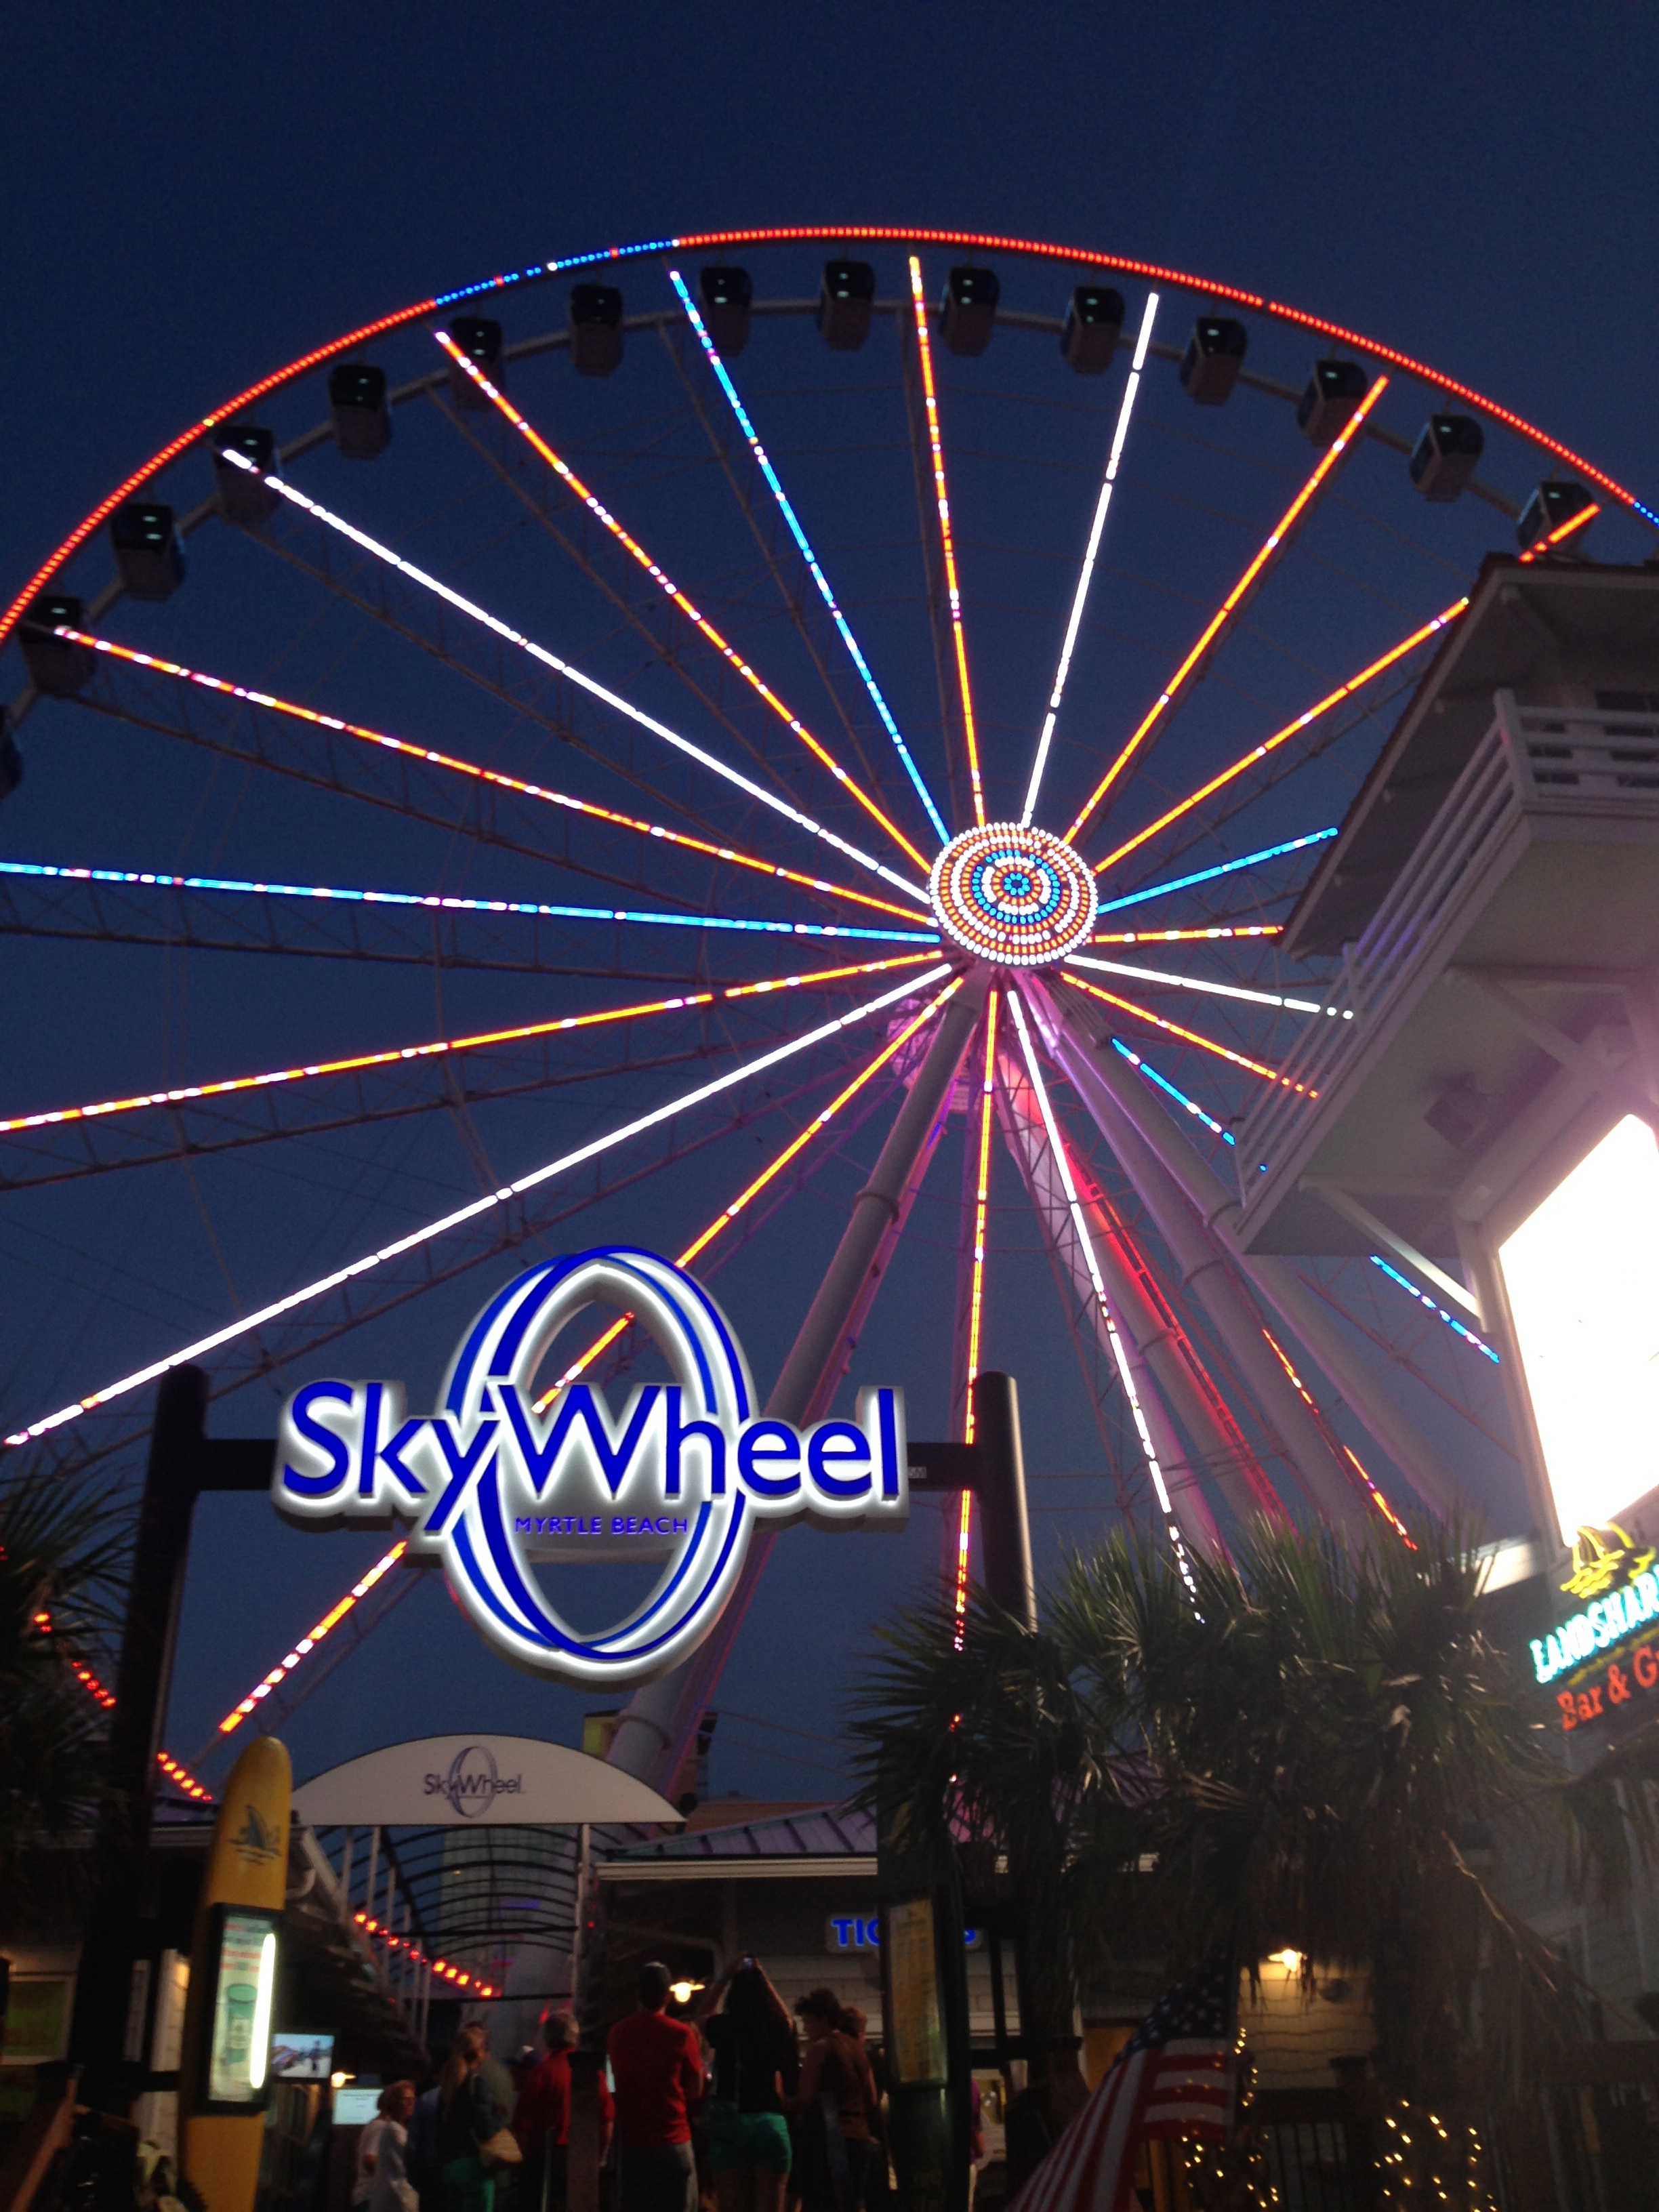 Skywheel